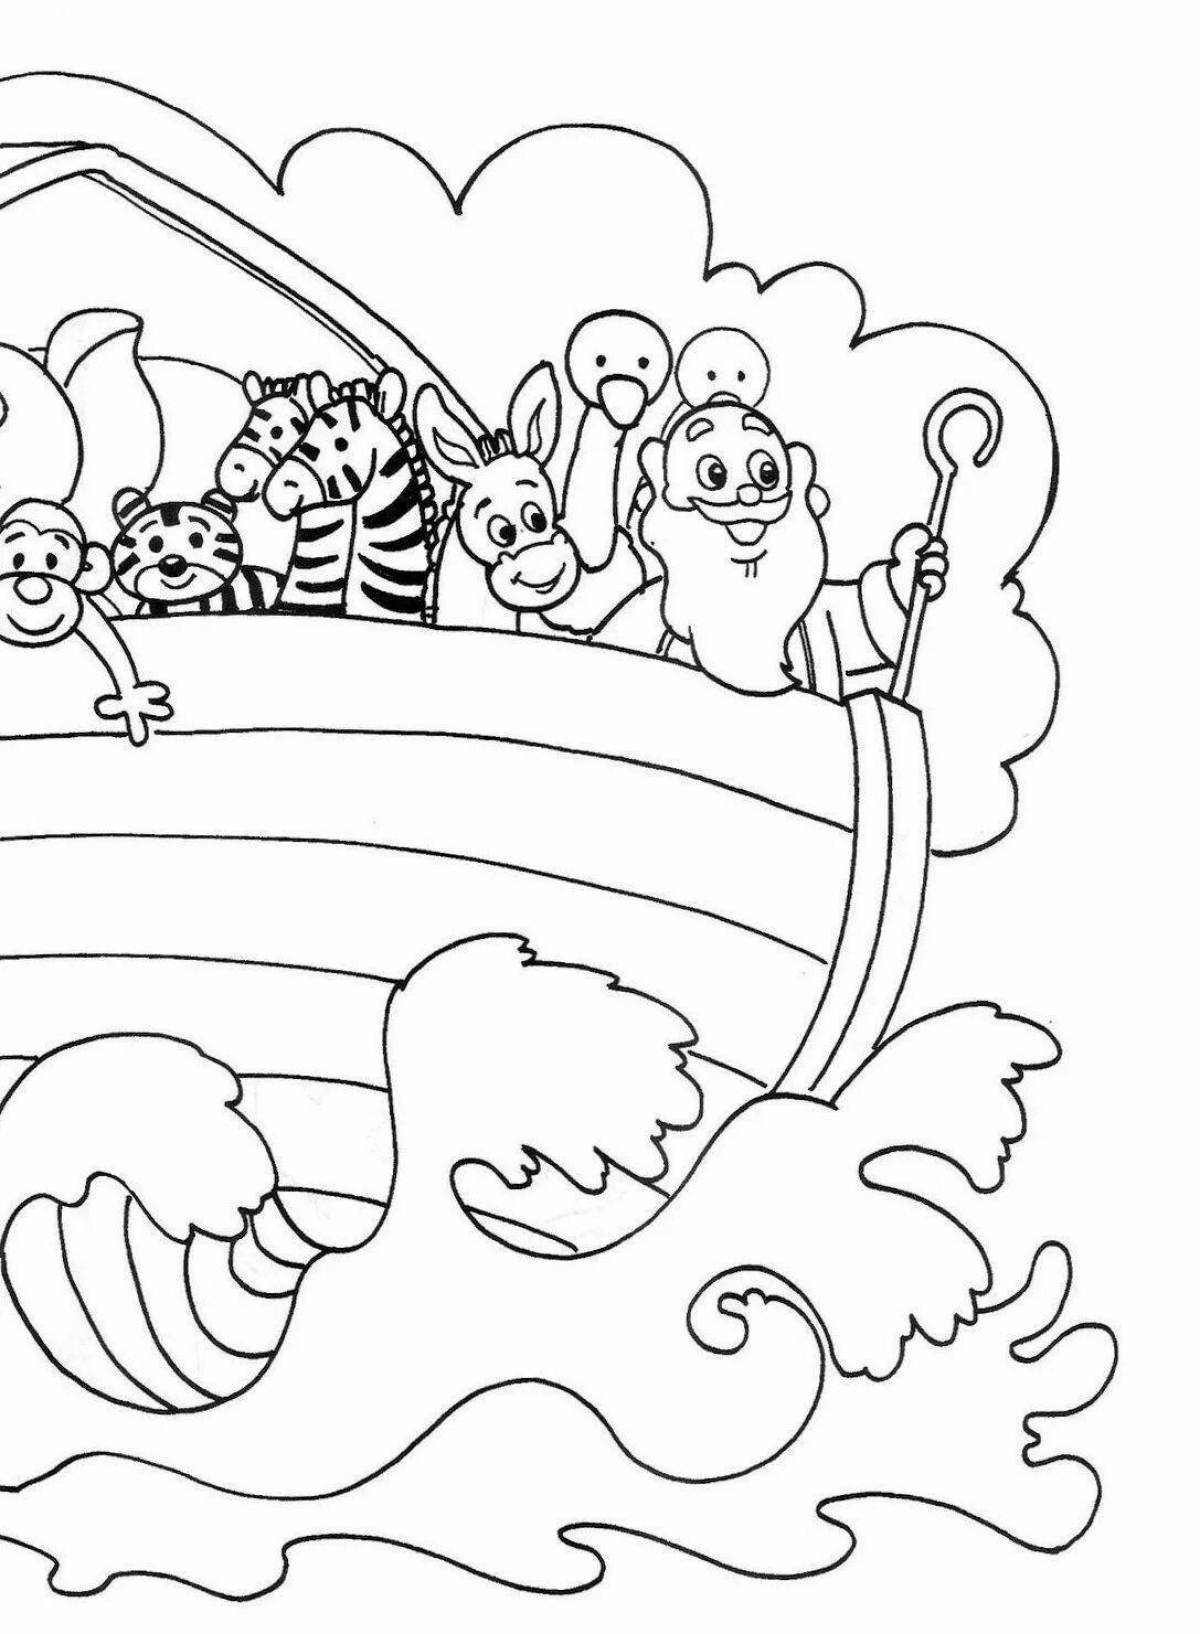 Coloring book Joyful Noah's Ark